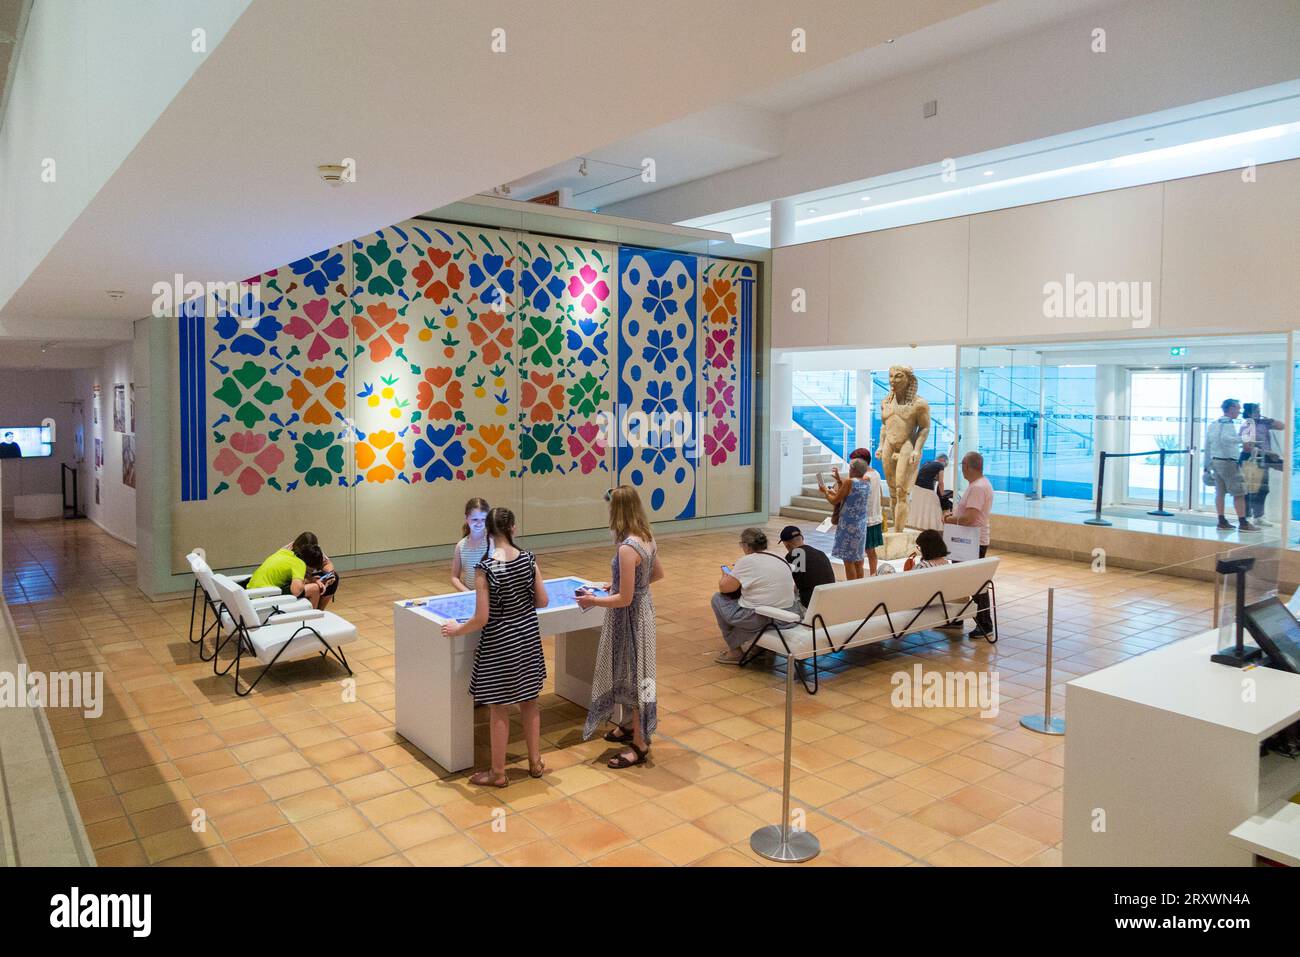 Ingresso interno della reception dell'ala moderna dell'edificio della galleria Musee Matisse a Nizza, Francia. Il quadro generale è Fleurs et Fruits. (135) Foto Stock